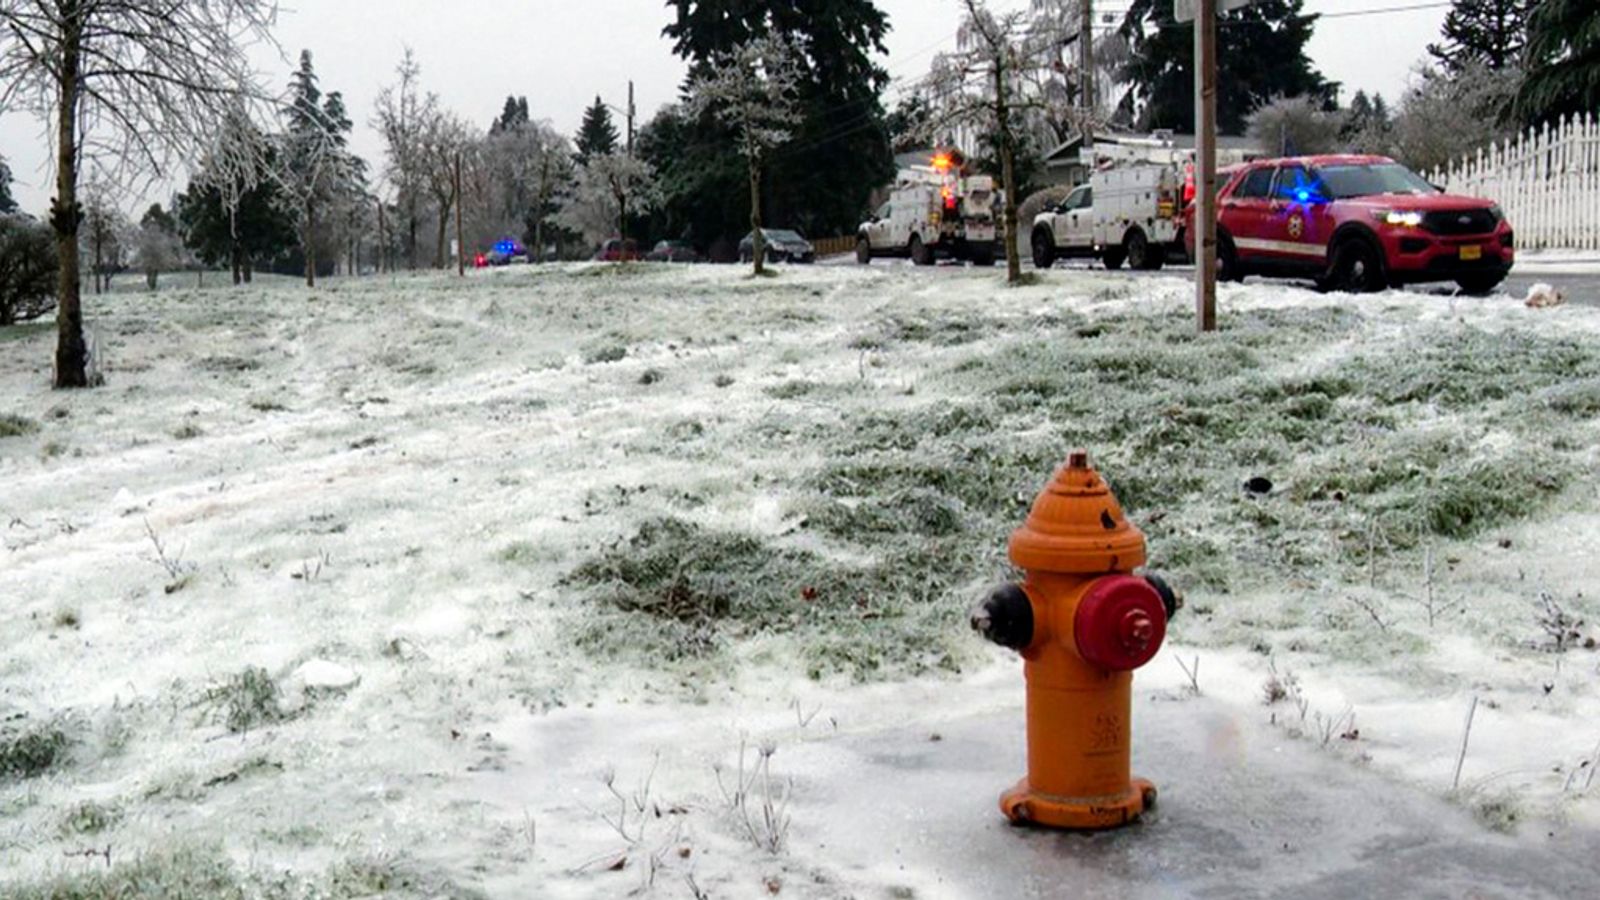 Трима загинаха от токов удар, след като захранващ проводник падна върху кола в ледена буря в Орегон